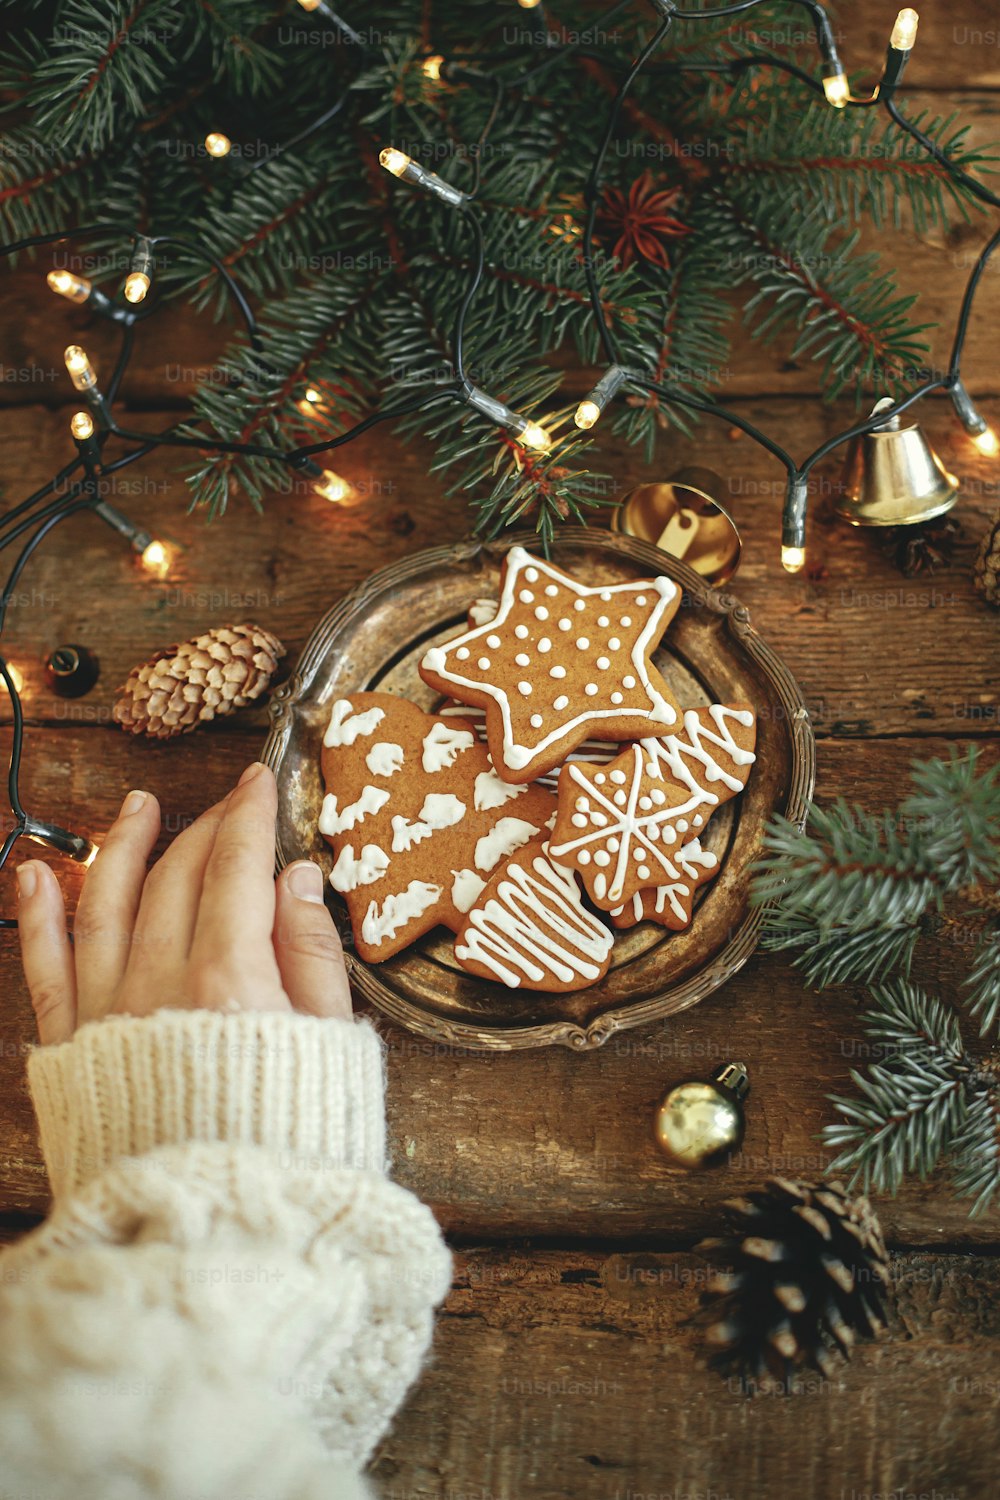 Mão segurando prato com biscoitos de gengibre de Natal, ramos de abeto, luzes quentes na mesa de madeira rústica, flat lay. Imagem atmosférica de inverno. Saudação das estações. Deliciosos biscoitos caseiros